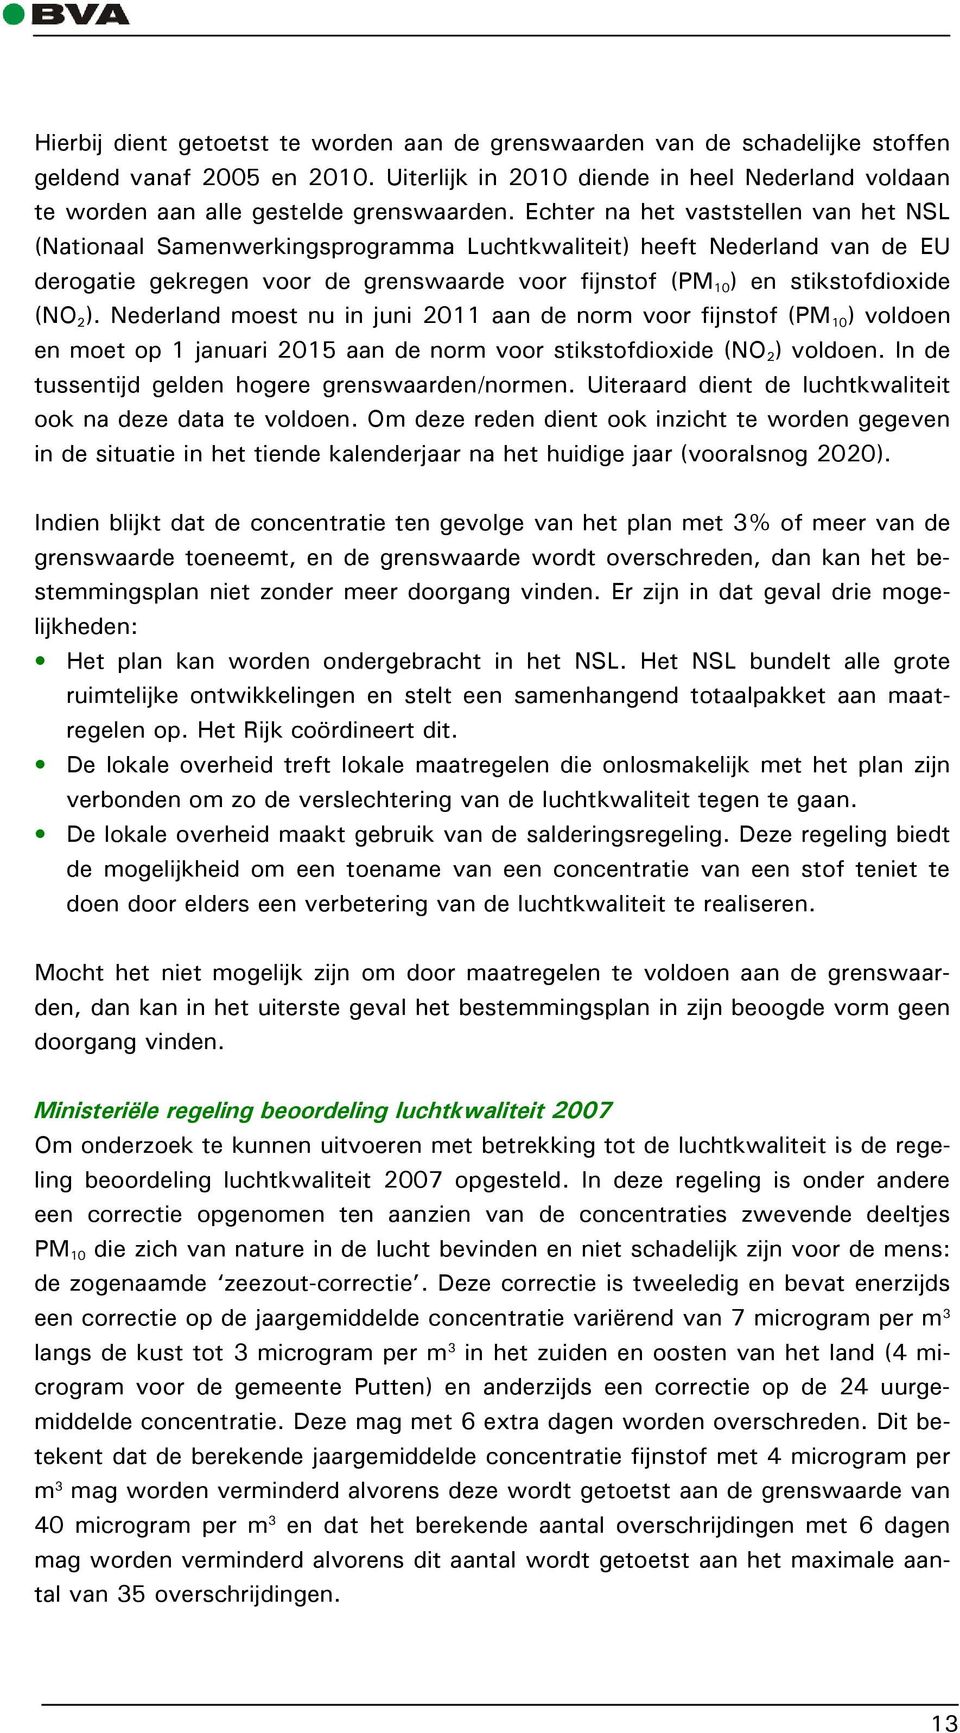 2 ). Nederland moest nu in juni 2011 aan de norm voor fijnstof (PM 10 ) voldoen en moet op 1 januari 2015 aan de norm voor stikstofdioxide (NO 2 ) voldoen.